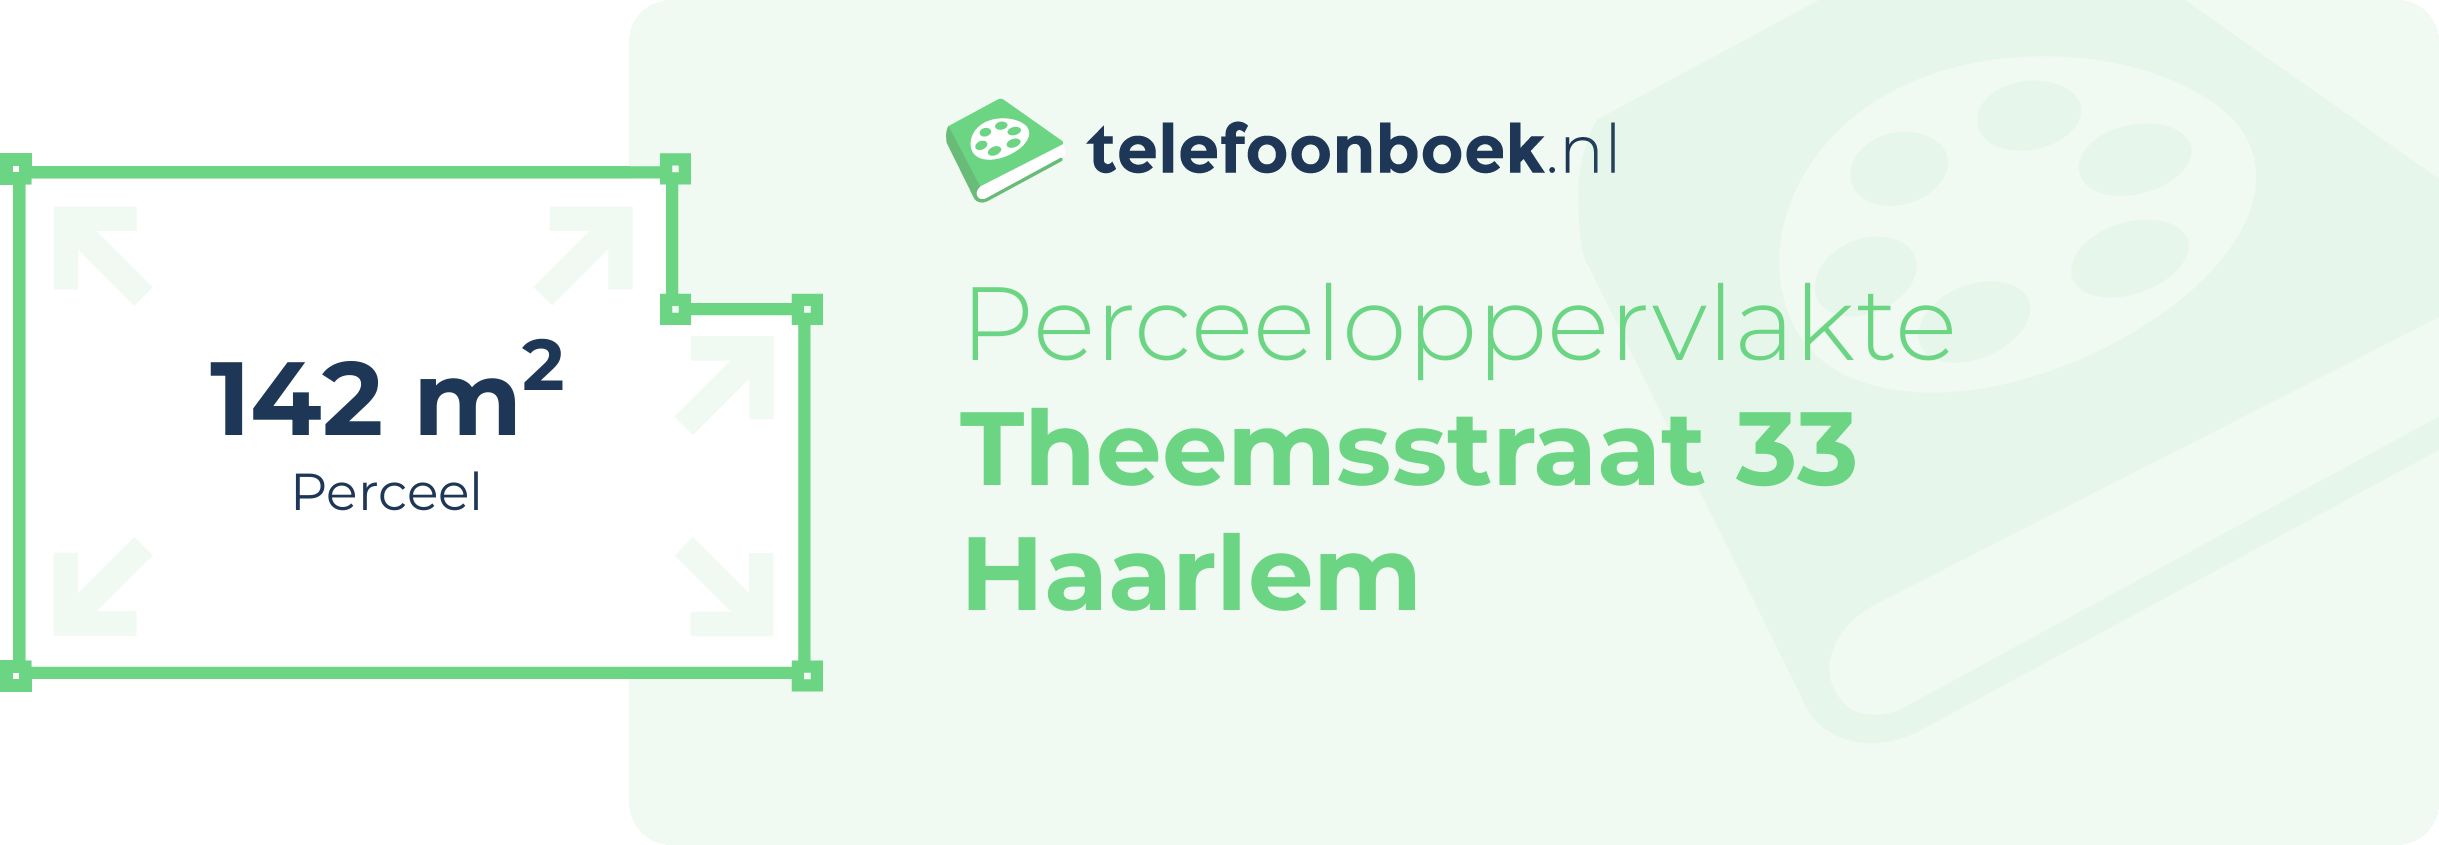 Perceeloppervlakte Theemsstraat 33 Haarlem